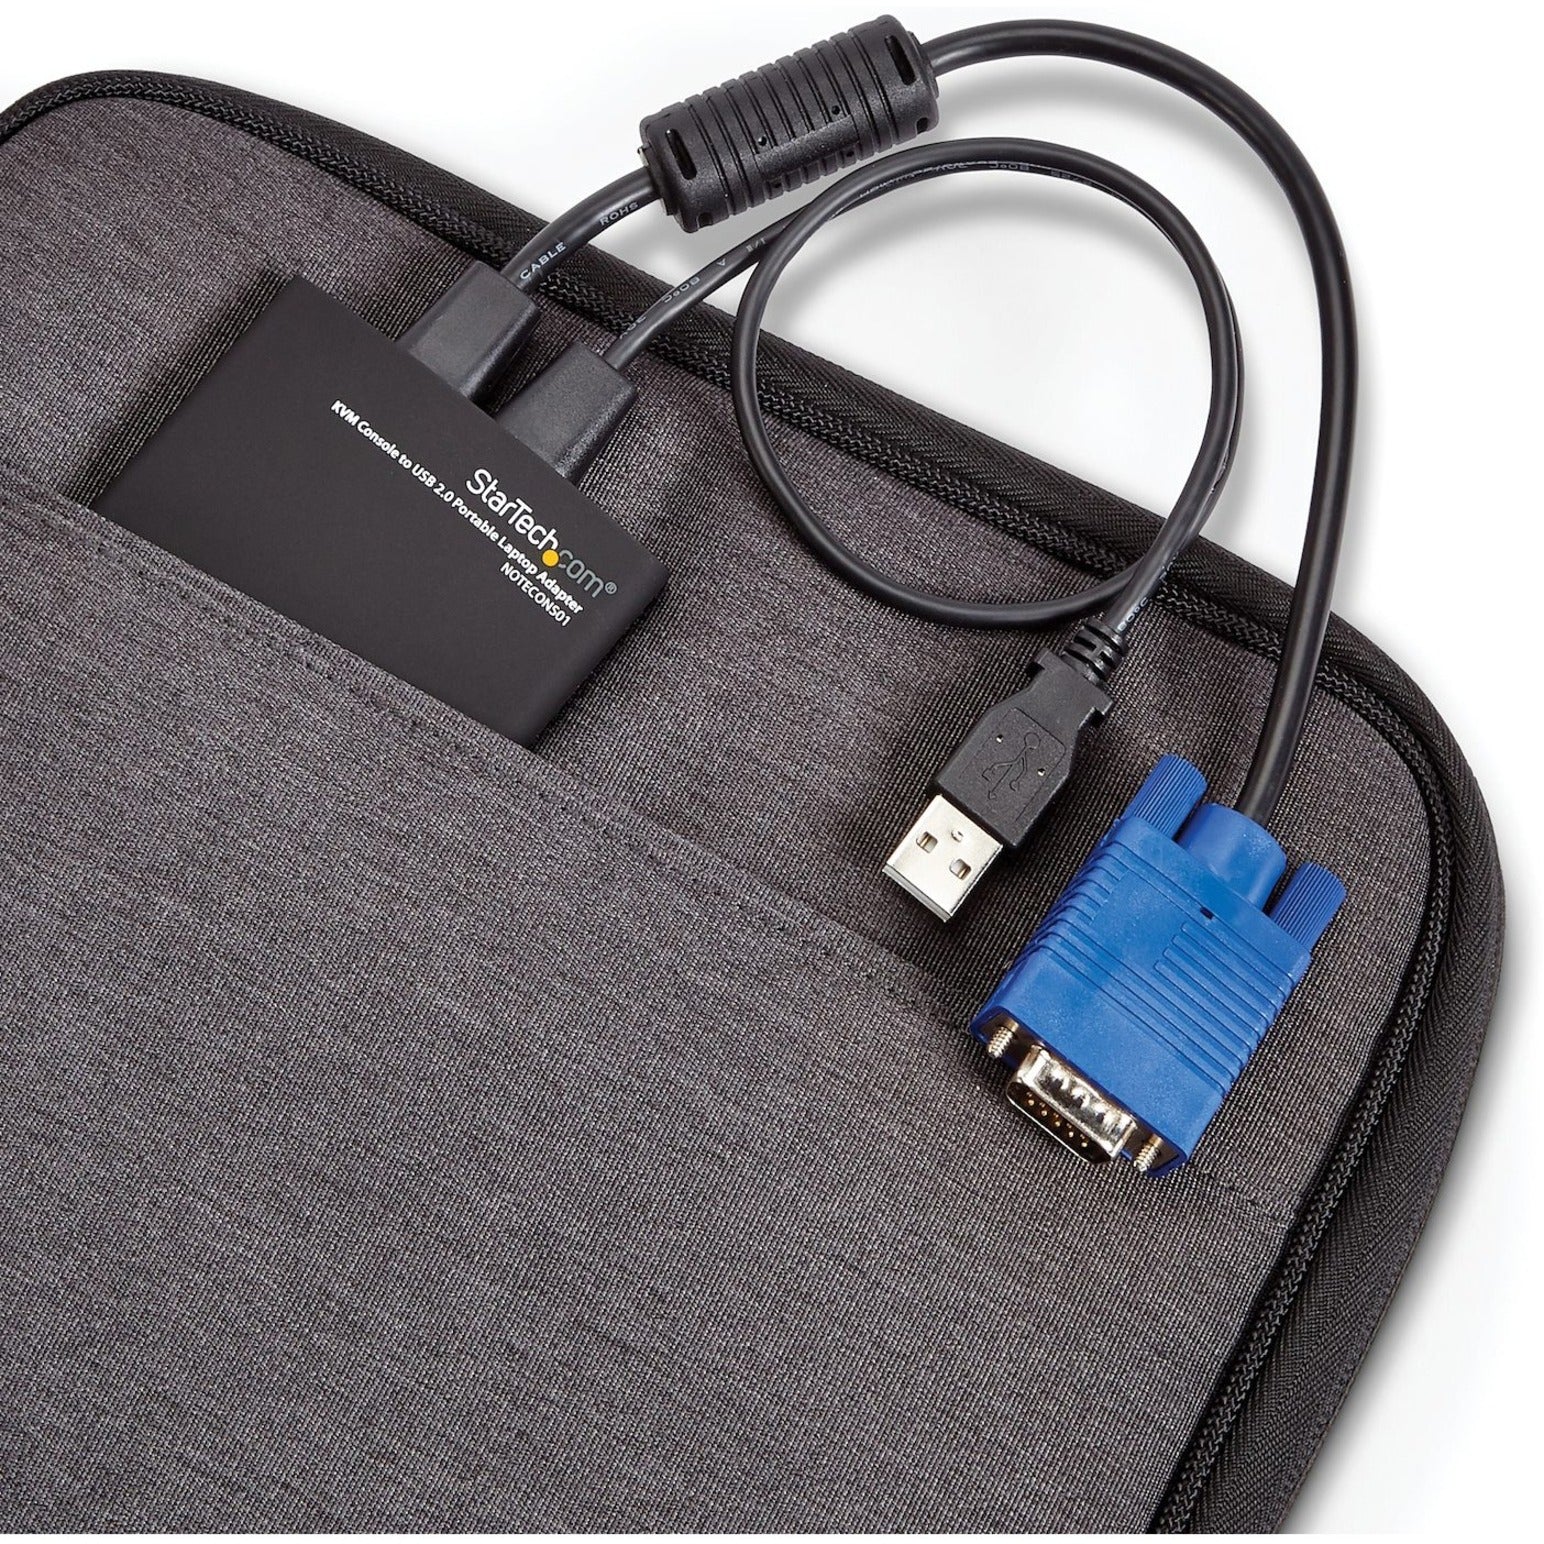 星备力科技 。康诺斯01  KVM 控制台 至 USB 2.0 便携式 笔记本 适配器 ，USB 电源 传递 （USB PD）， 黑色  星备力科技  星备力